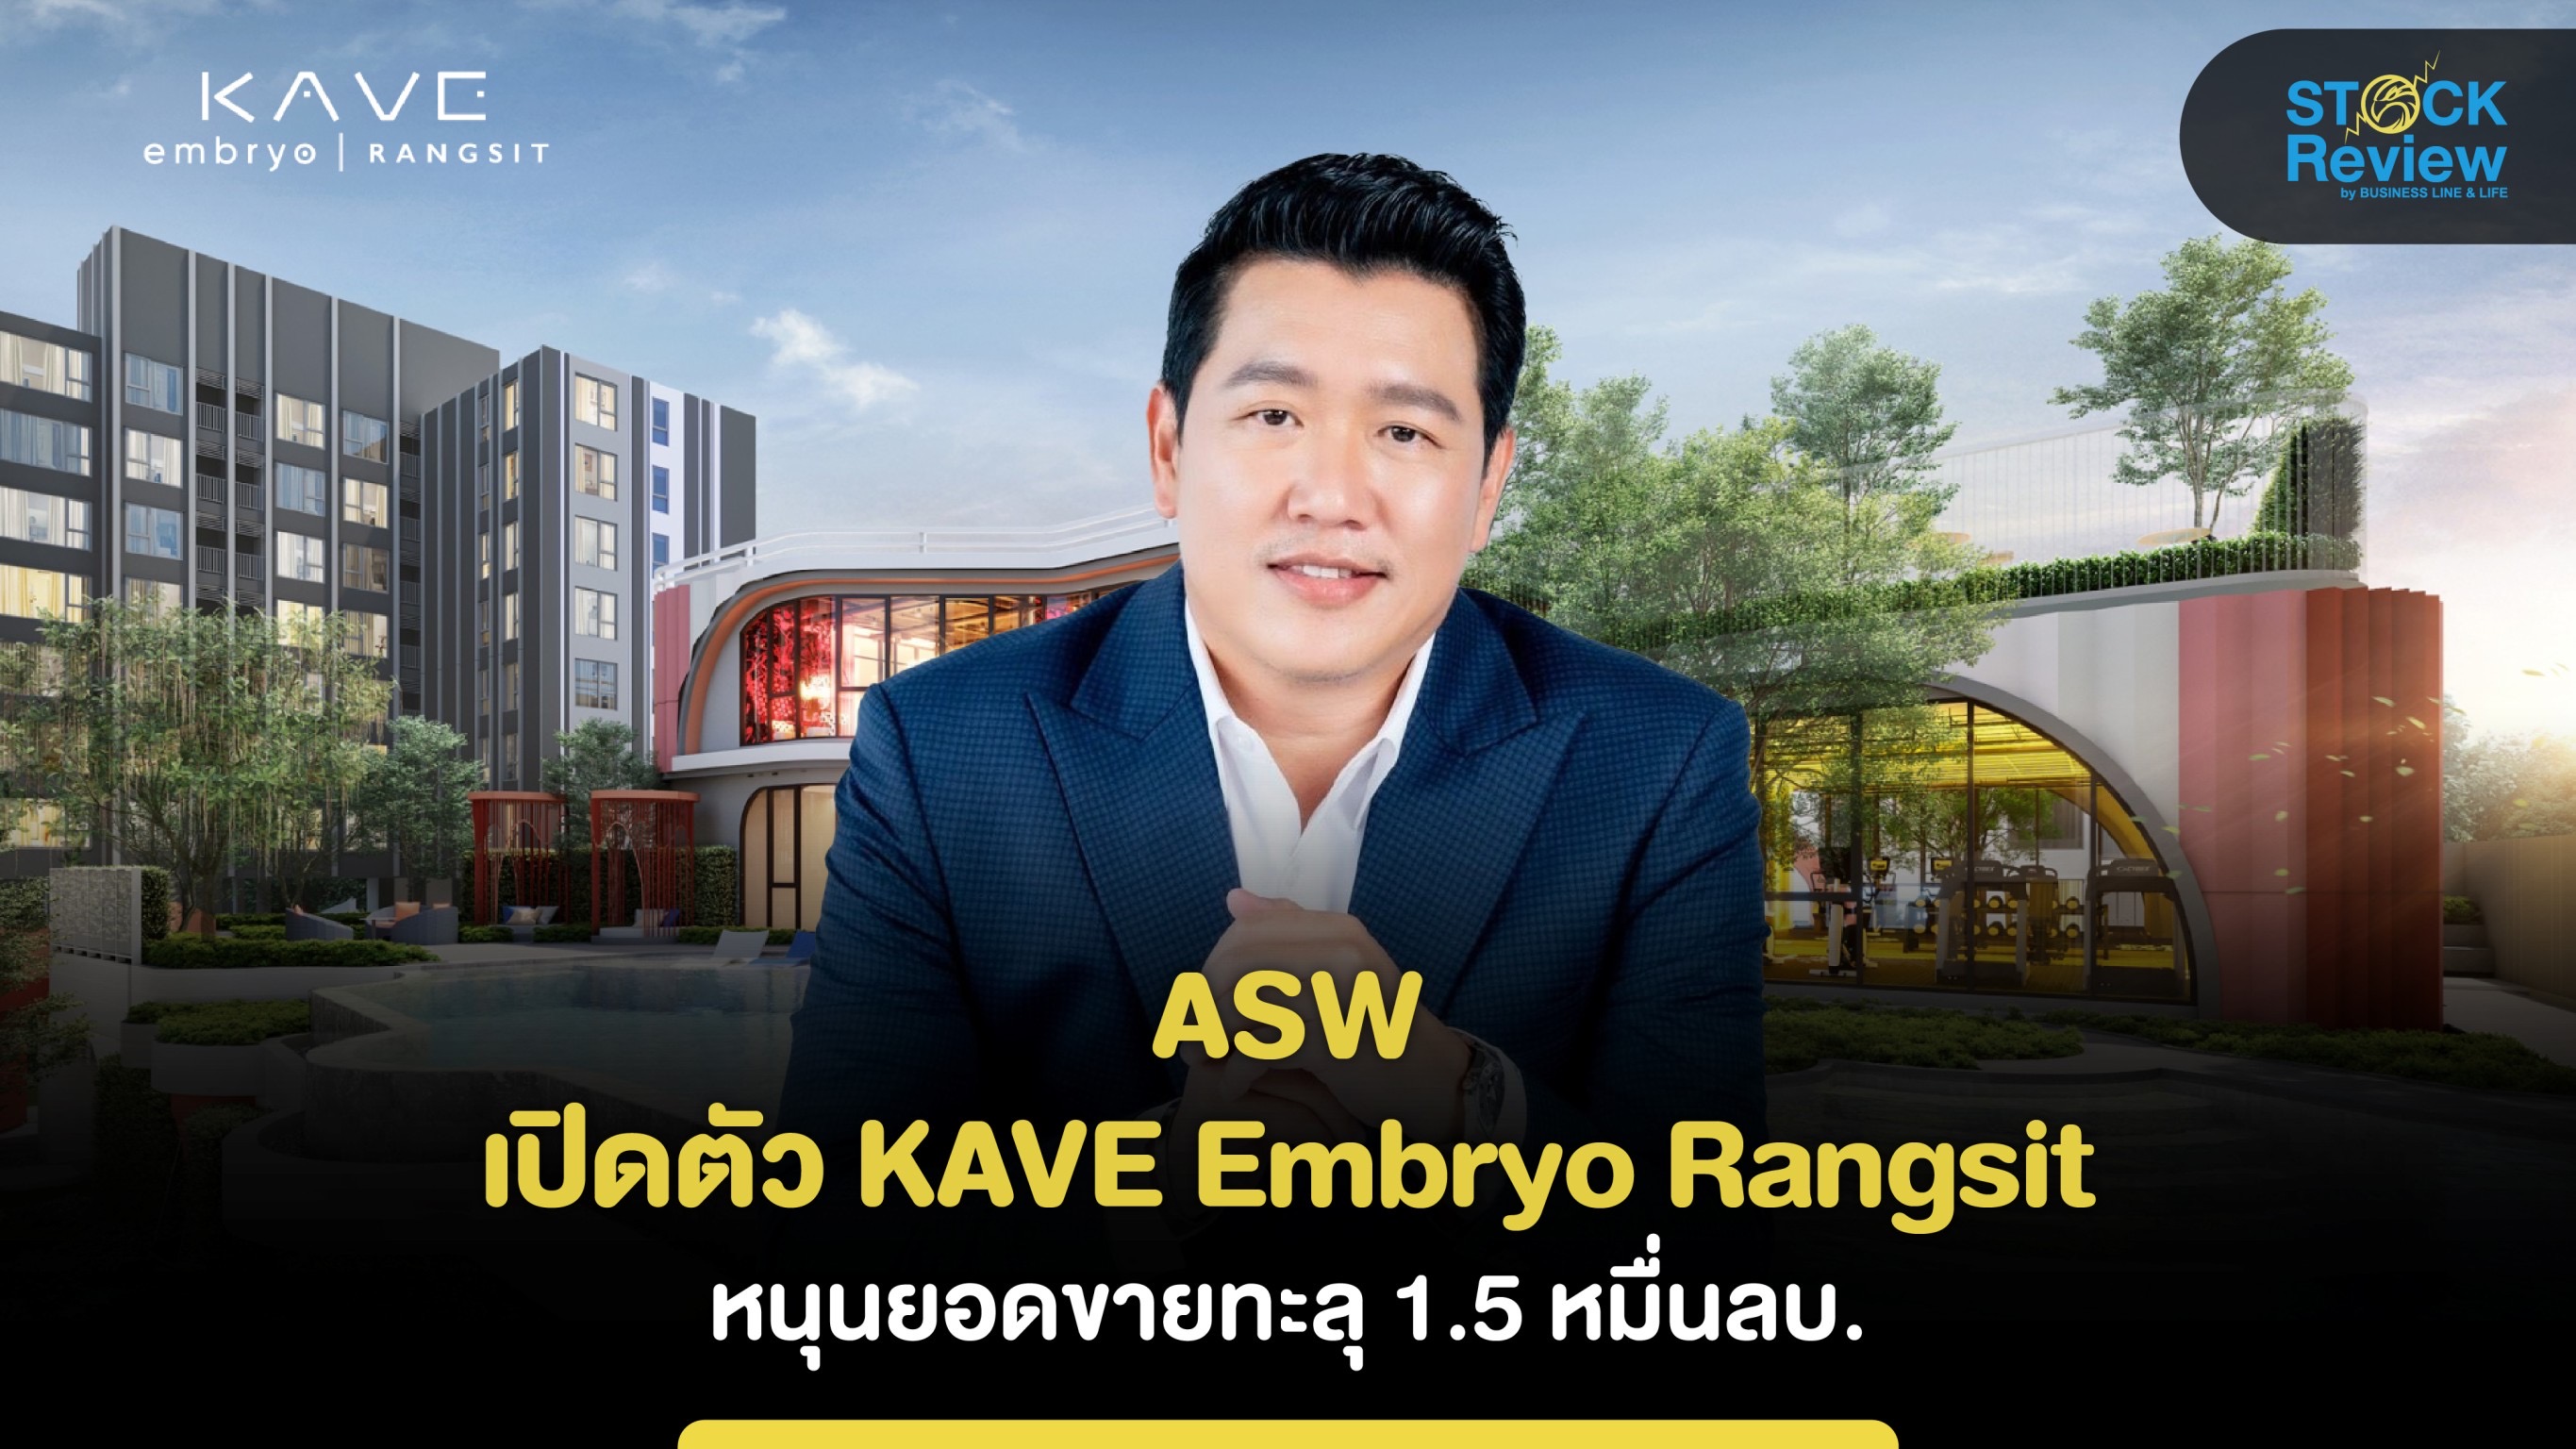 ASW เปิดตัว KAVE Embryo Rangsit  หนุนยอดขายทะลุ 1.5 หมื่นลบ.